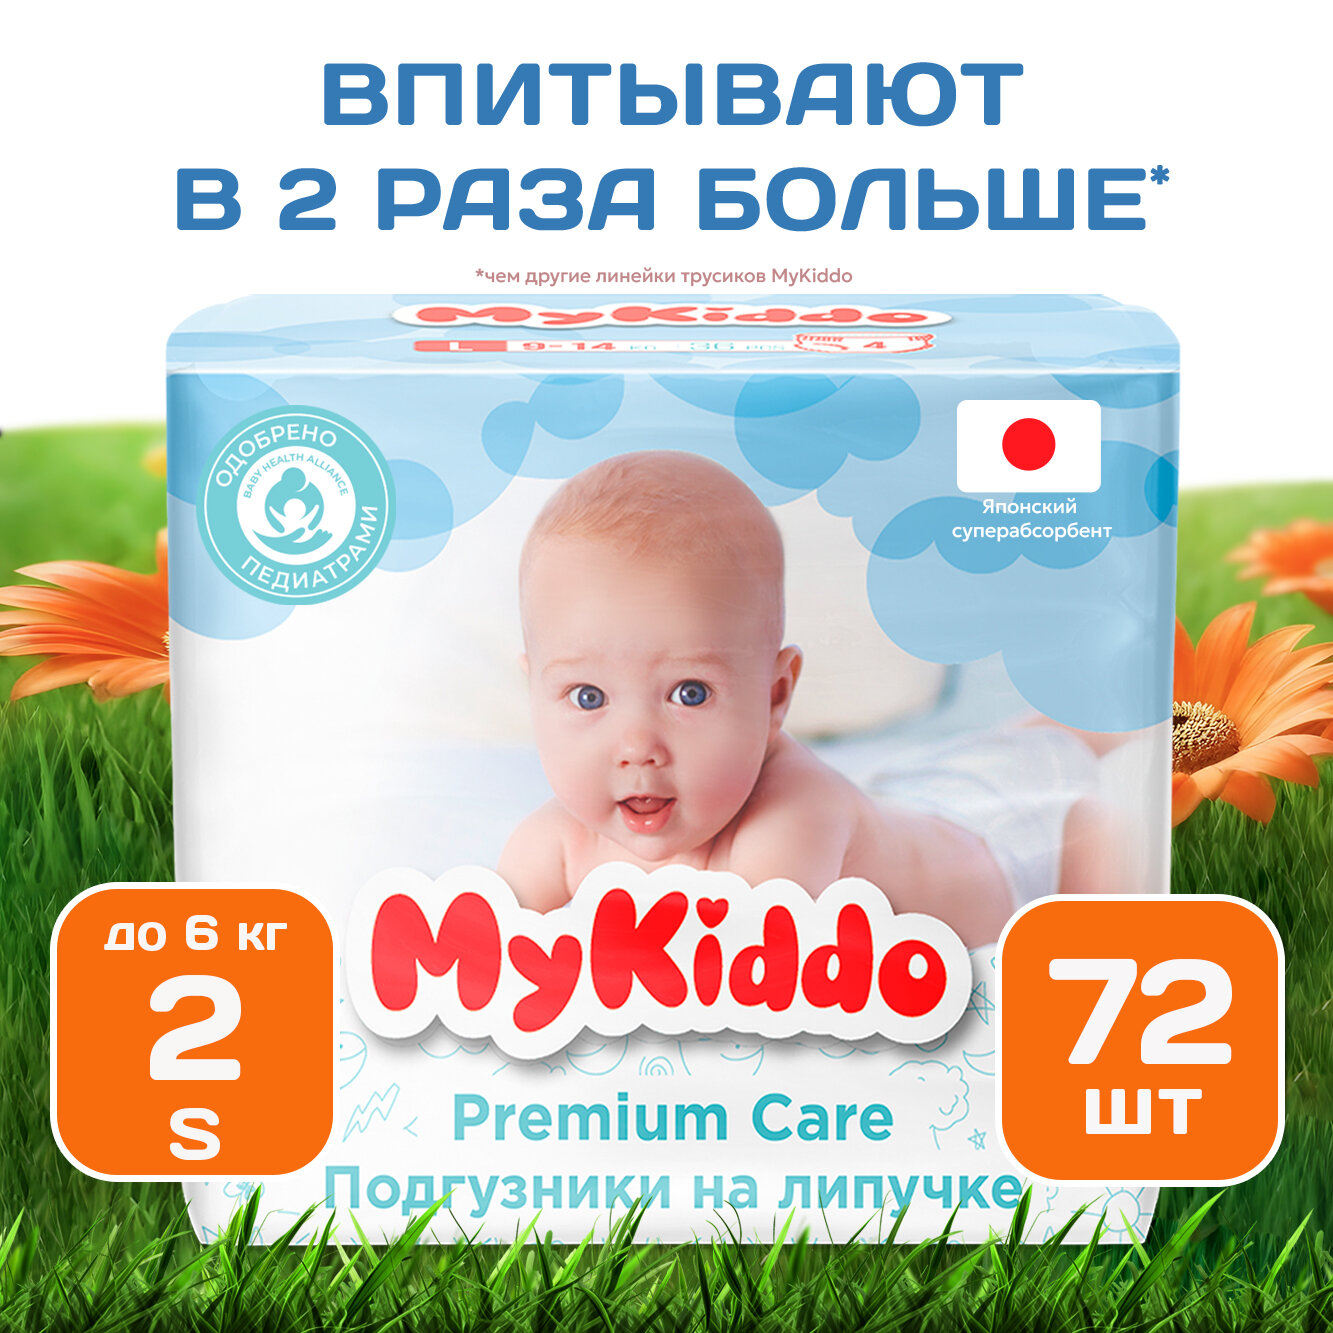 Подгузники на липучках детские с индикатором влаги MyKiddo Premium S MegaBox (до 6 кг) мегапак 72 шт (3 уп х 24 шт)